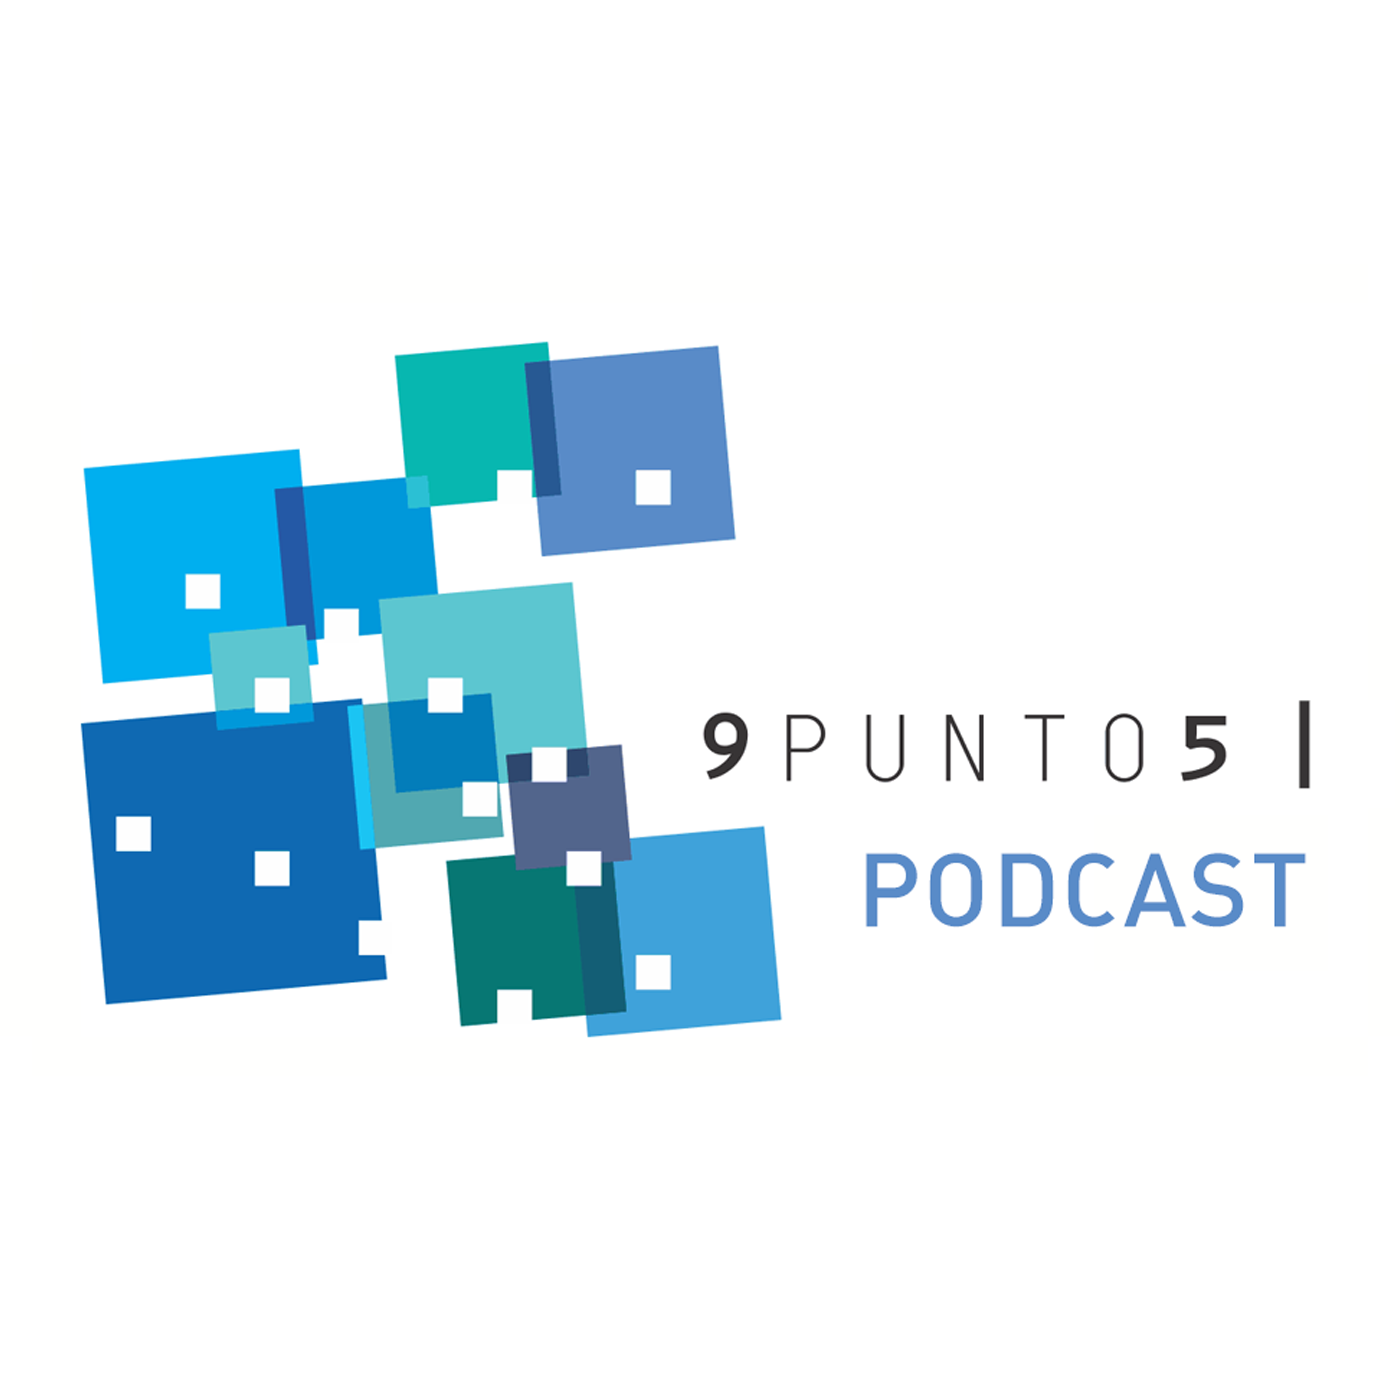 9punto5 - Expande tus habilidades digitales - Trabajo remoto y nuevas culturas empresariales